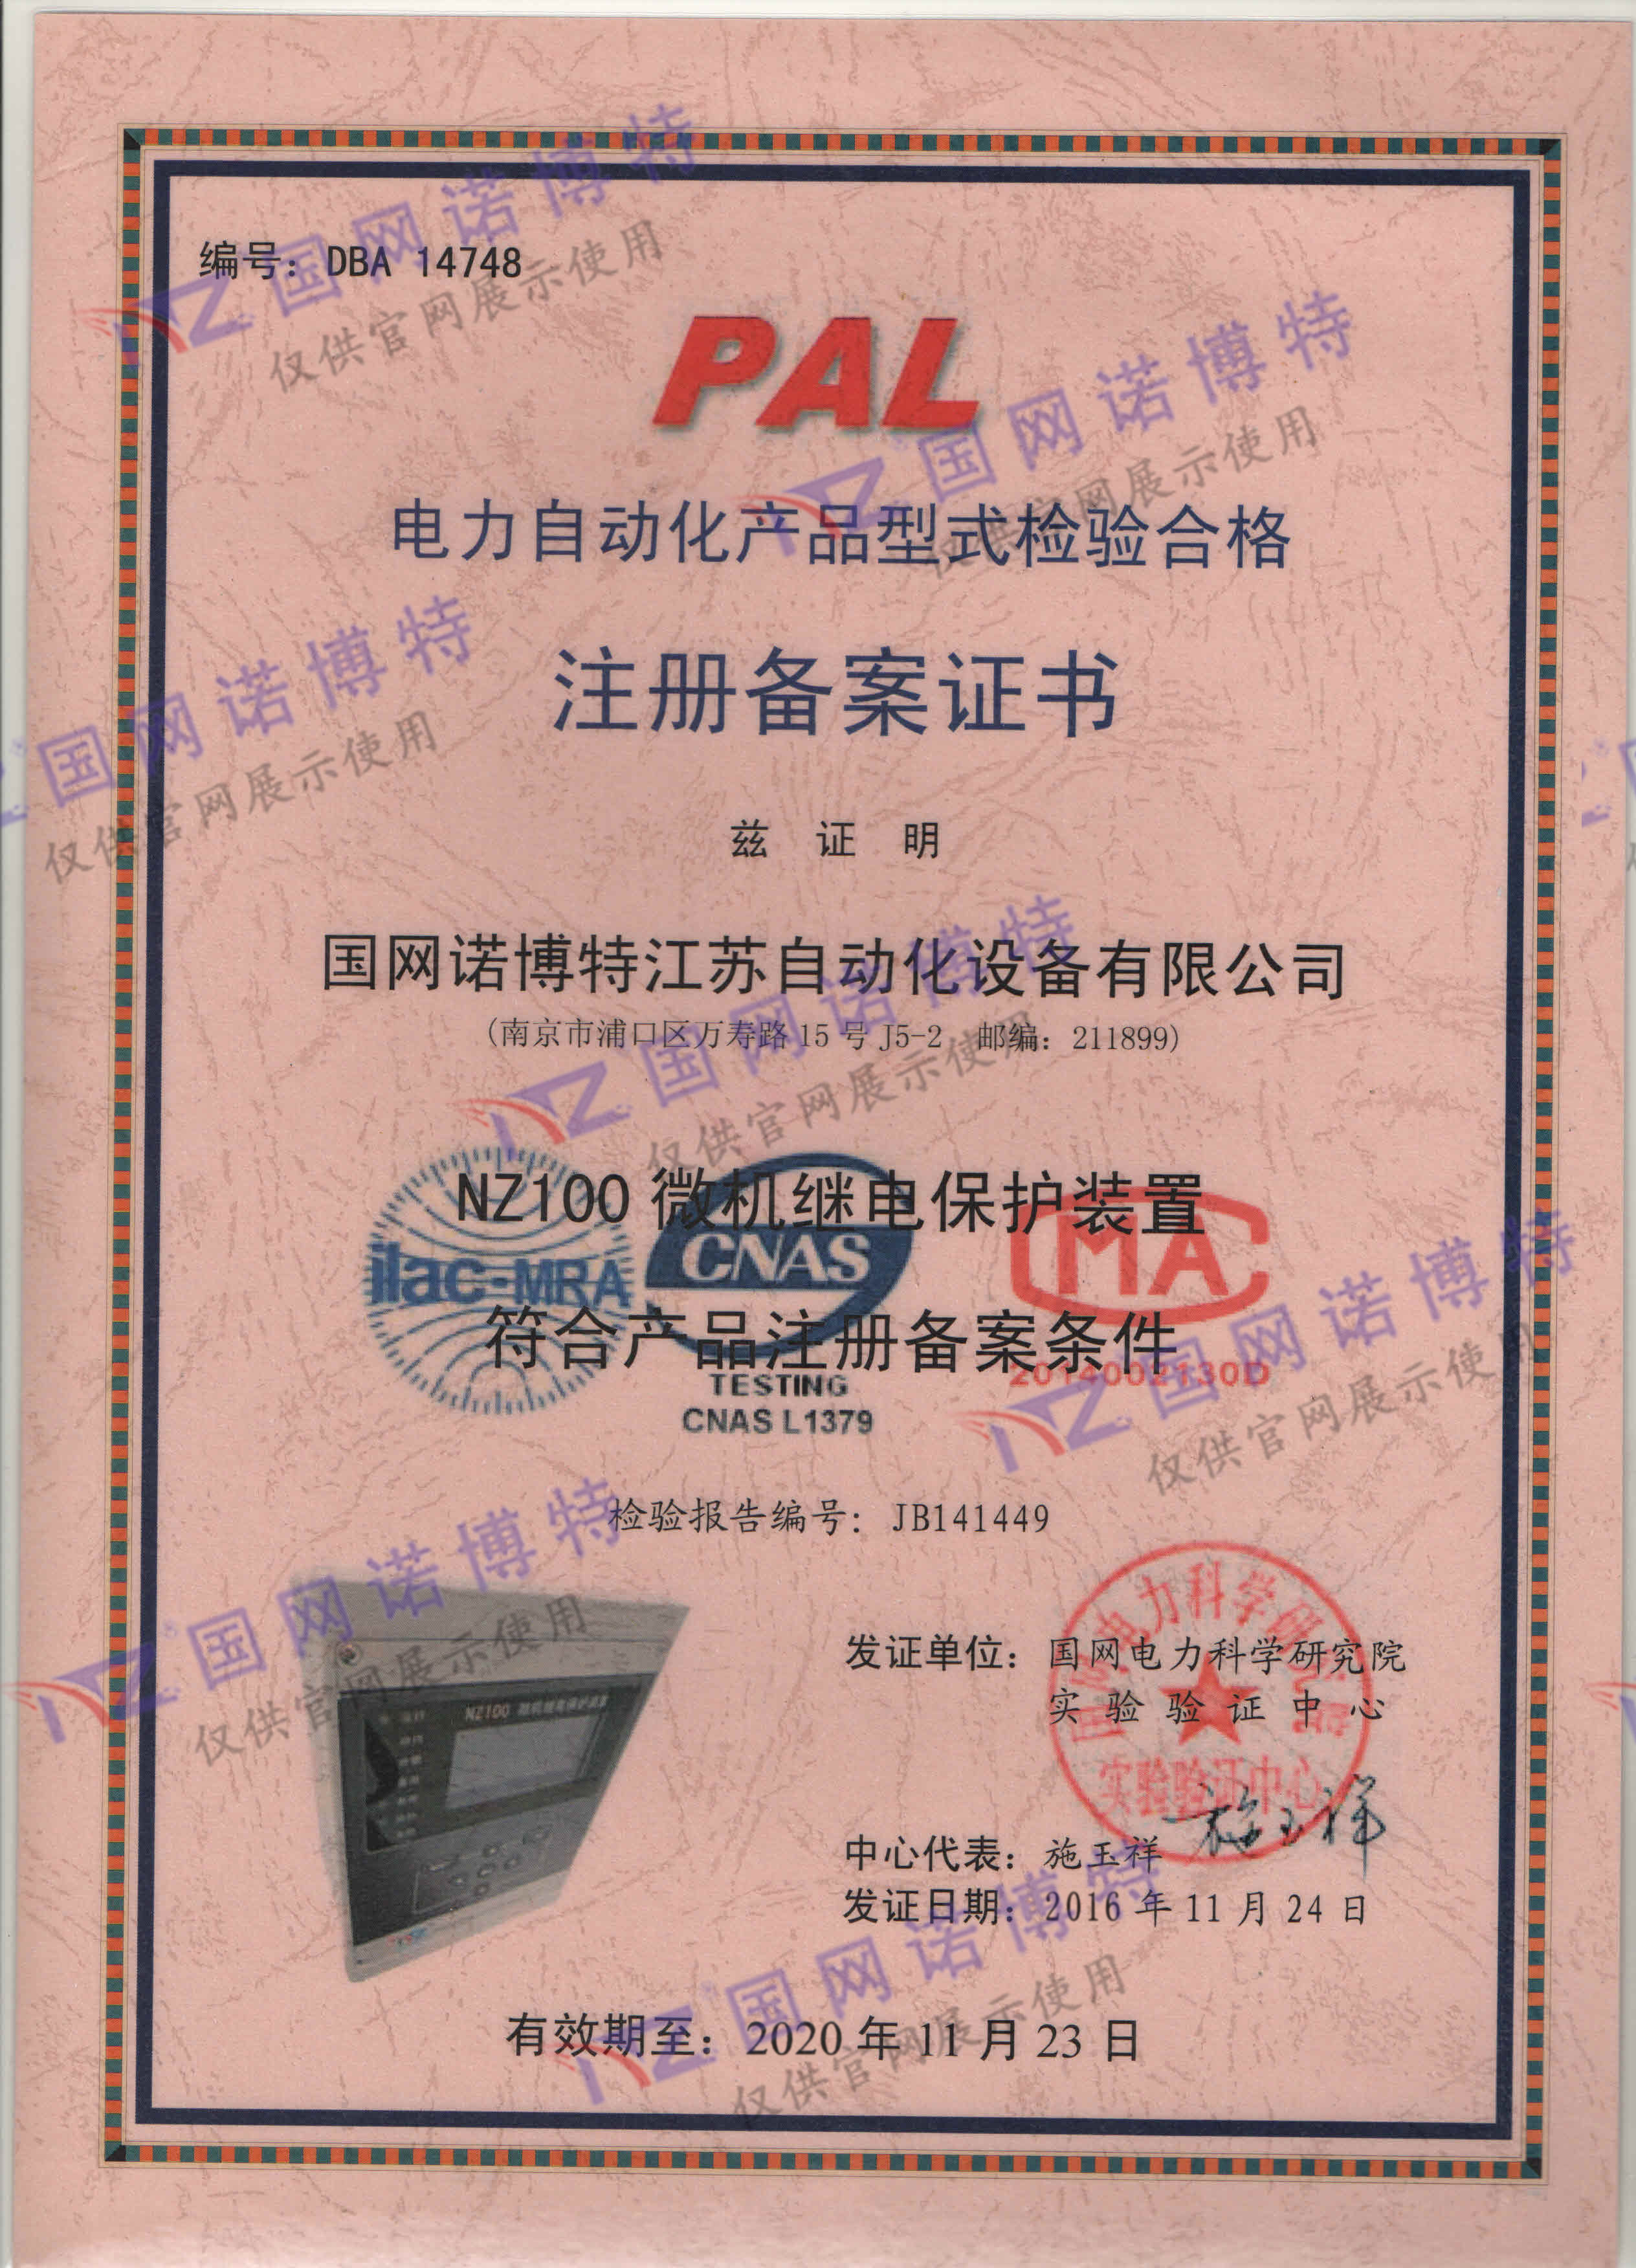 2020年-NZ100 PAL 证书